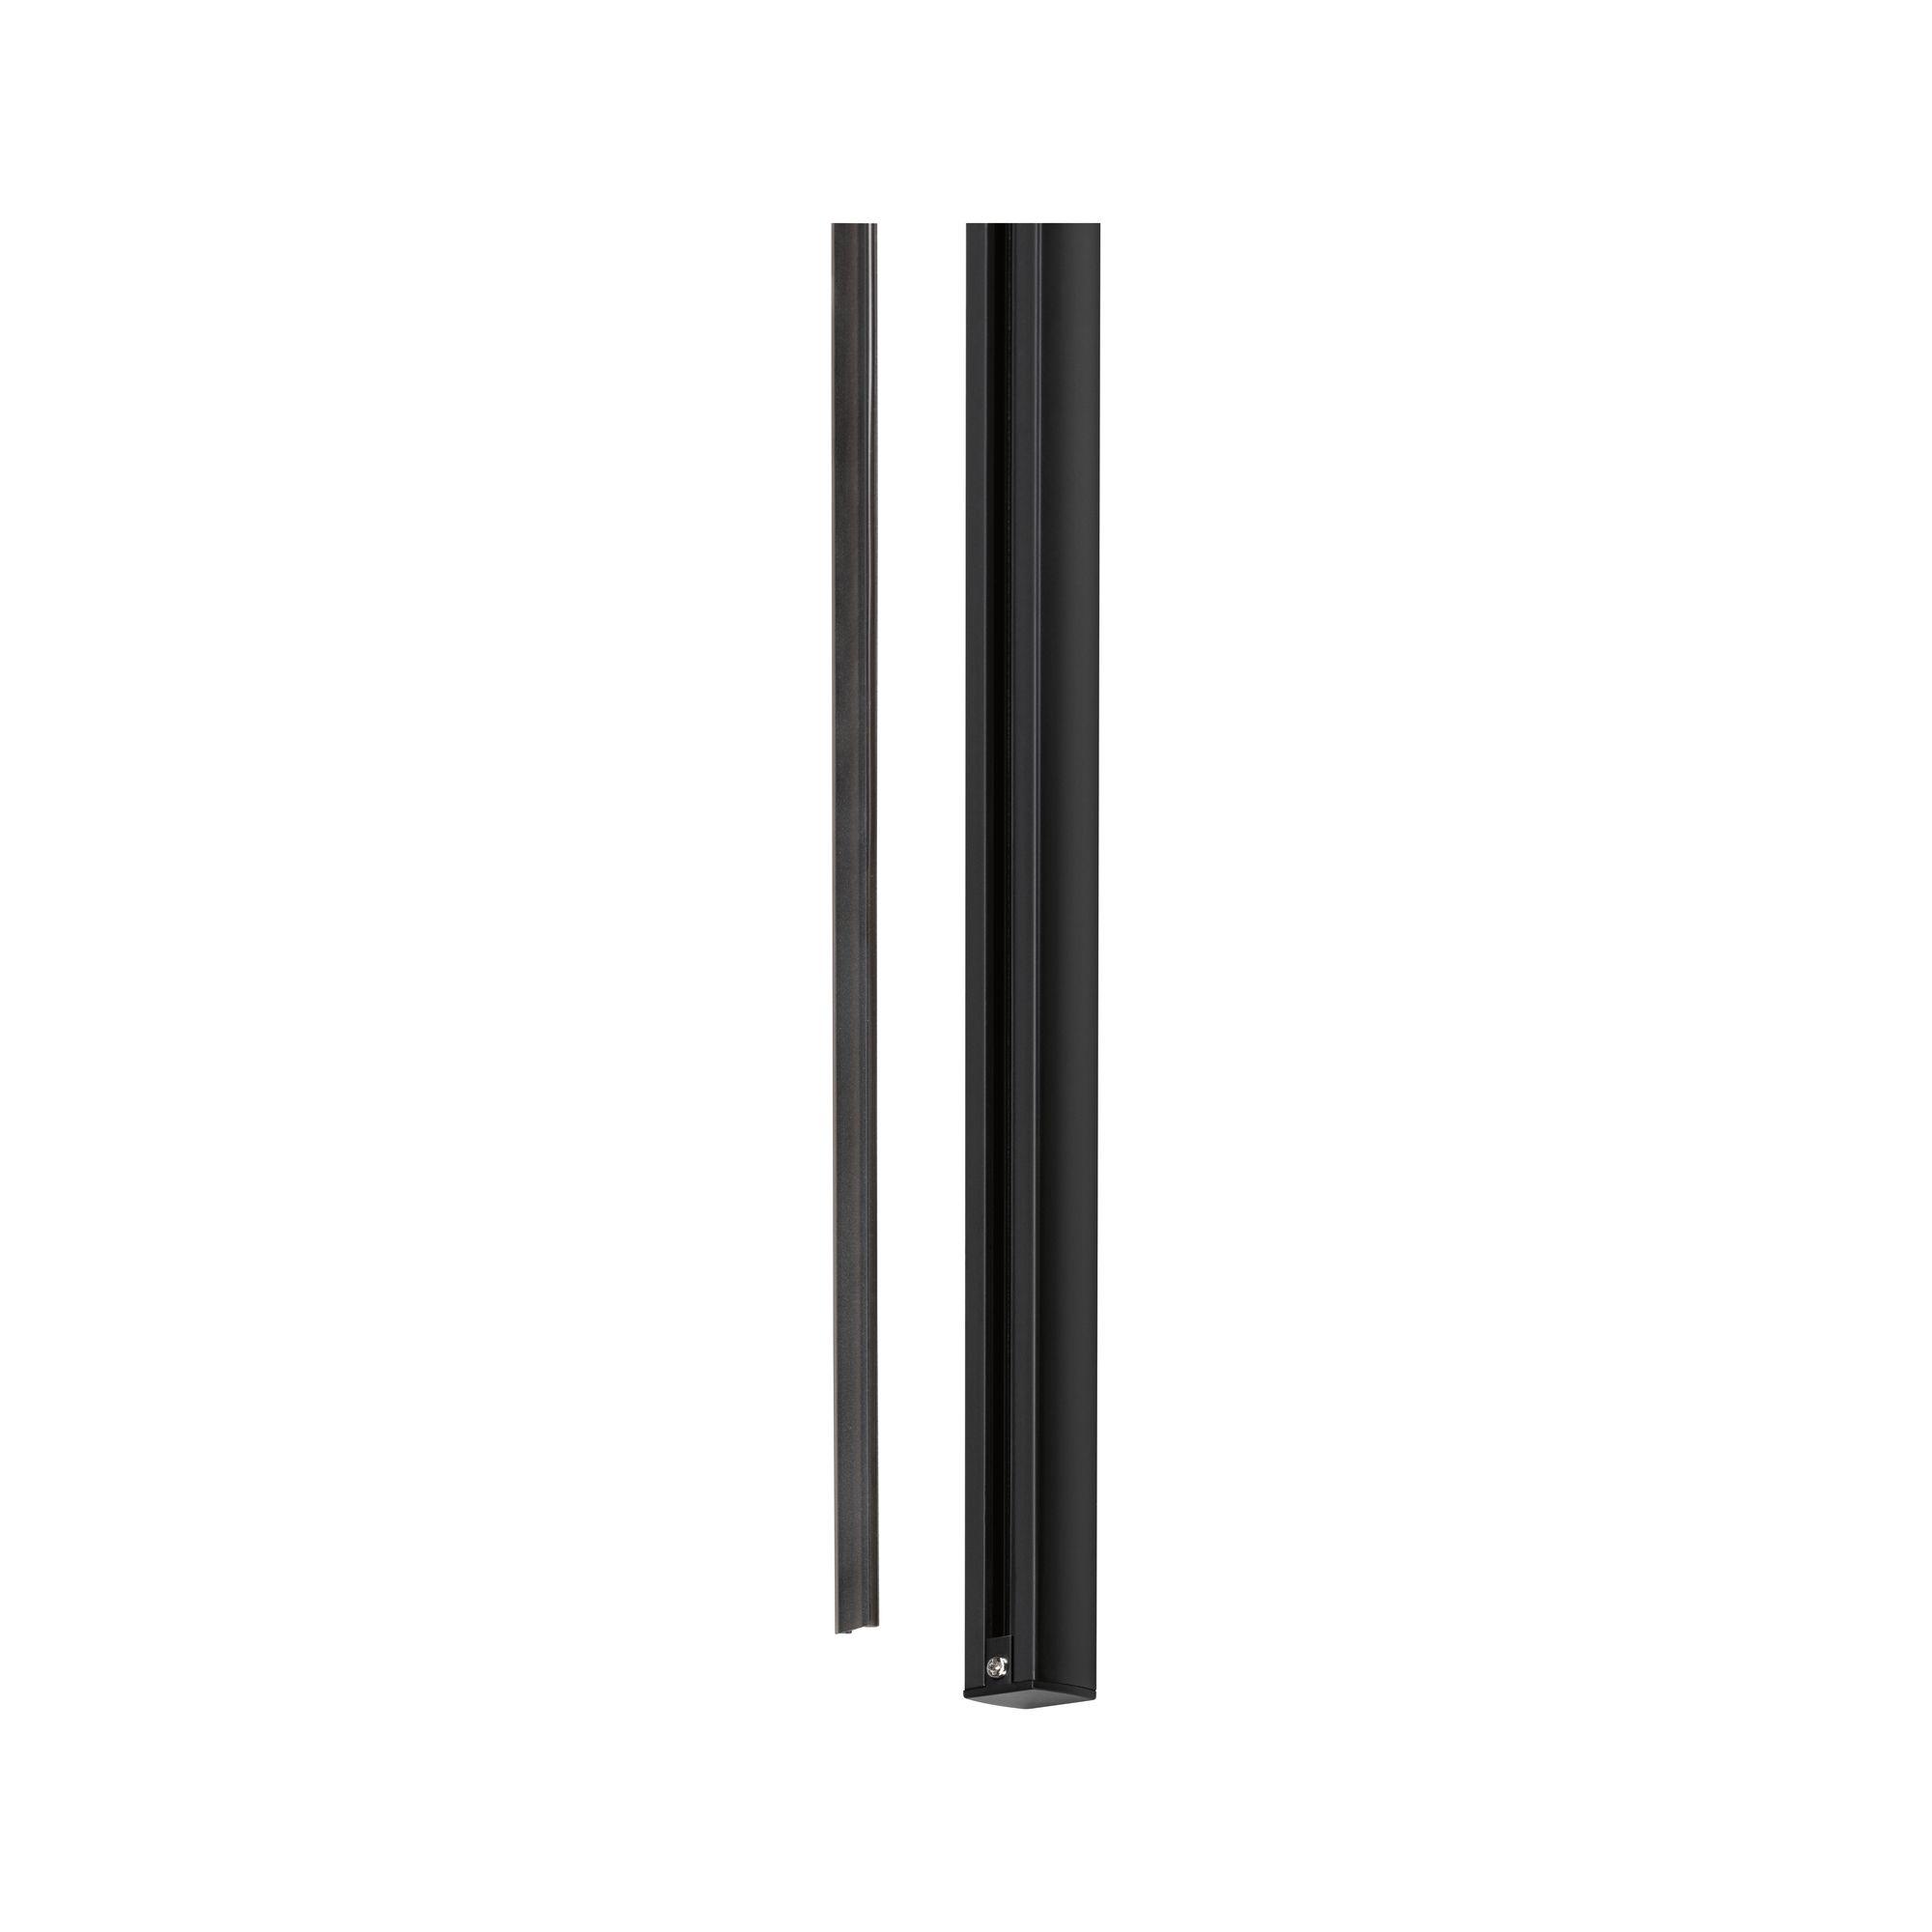 URail Safety Cover Strip 68 cm černá umělá hmota - PAULMANN